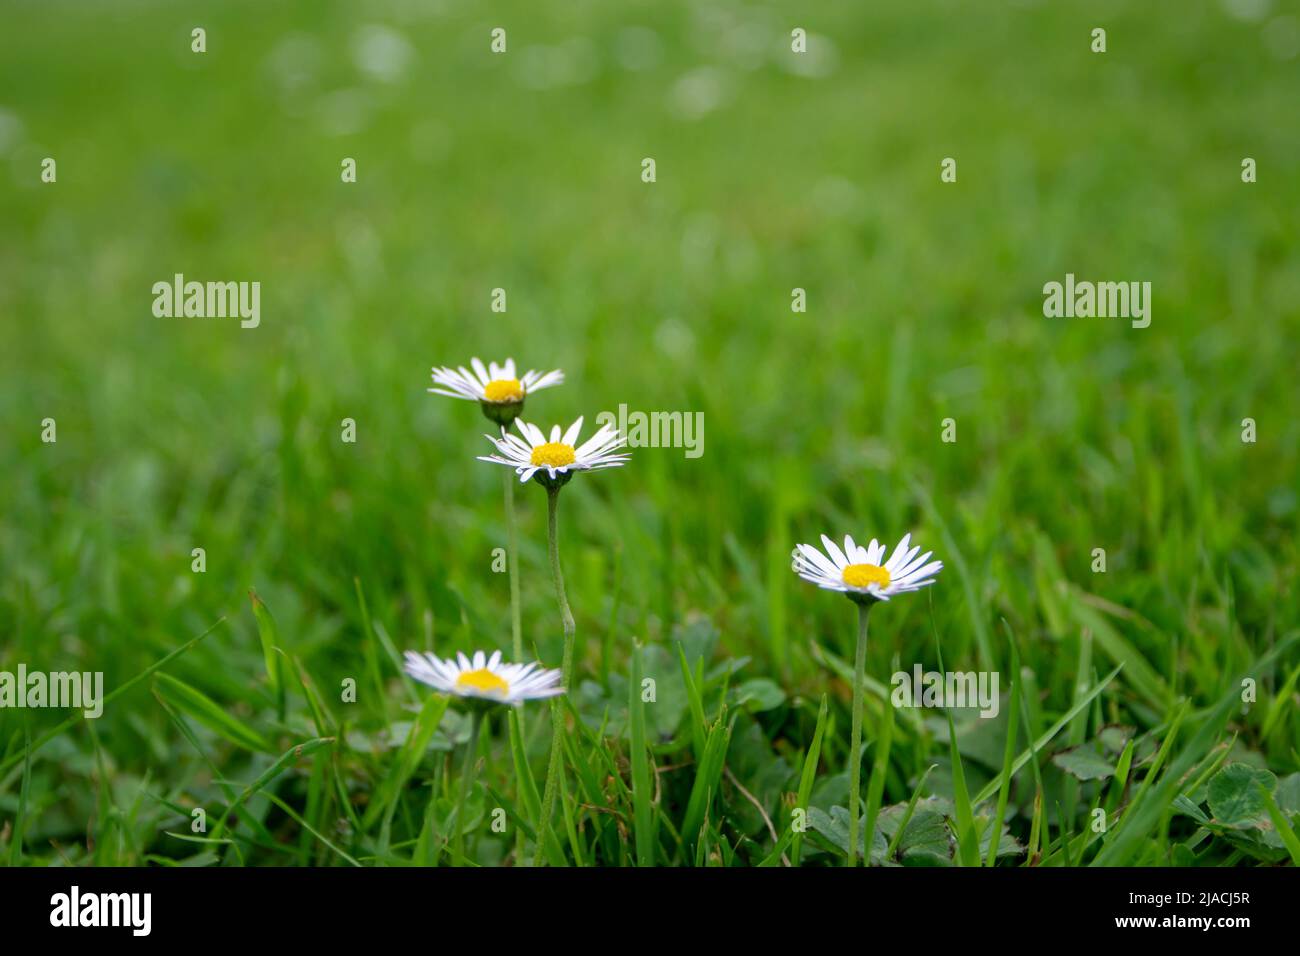 Daisy o bellis perennis fiori bianchi con centro giallo sul prato verde in primavera Foto Stock